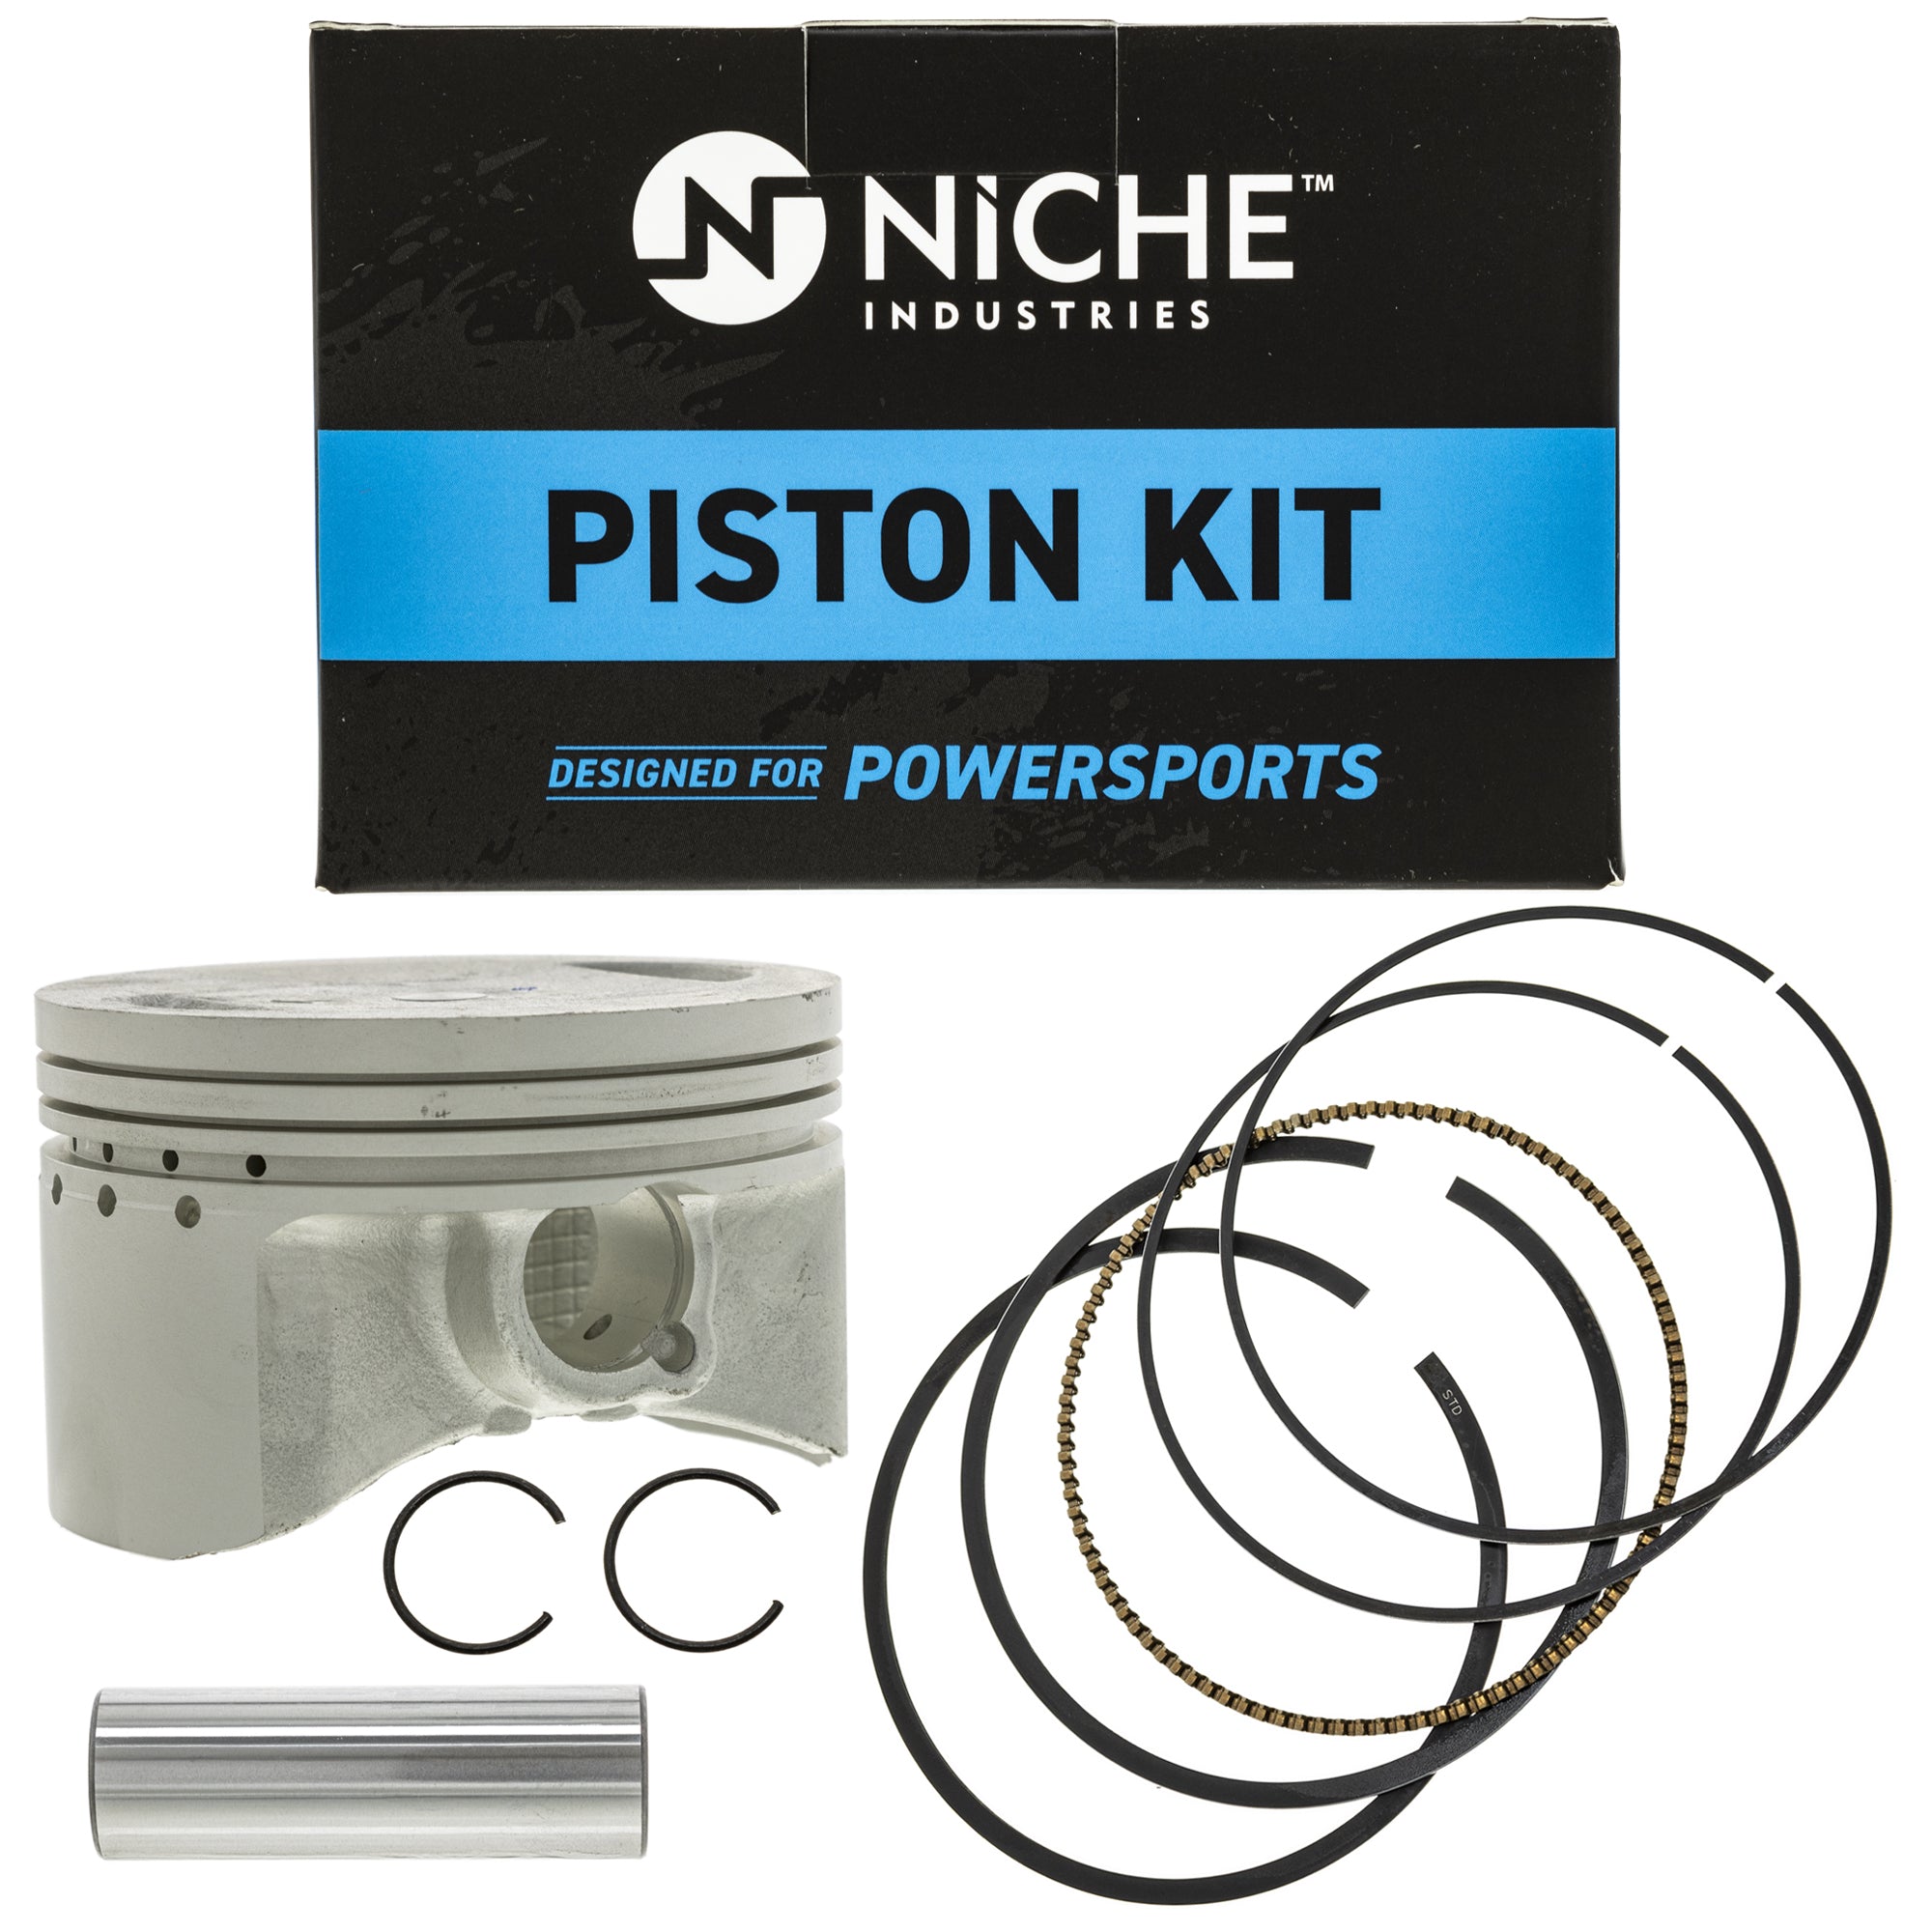 NICHE Piston Kit 93450-22027-00 5GH-11631-00-00